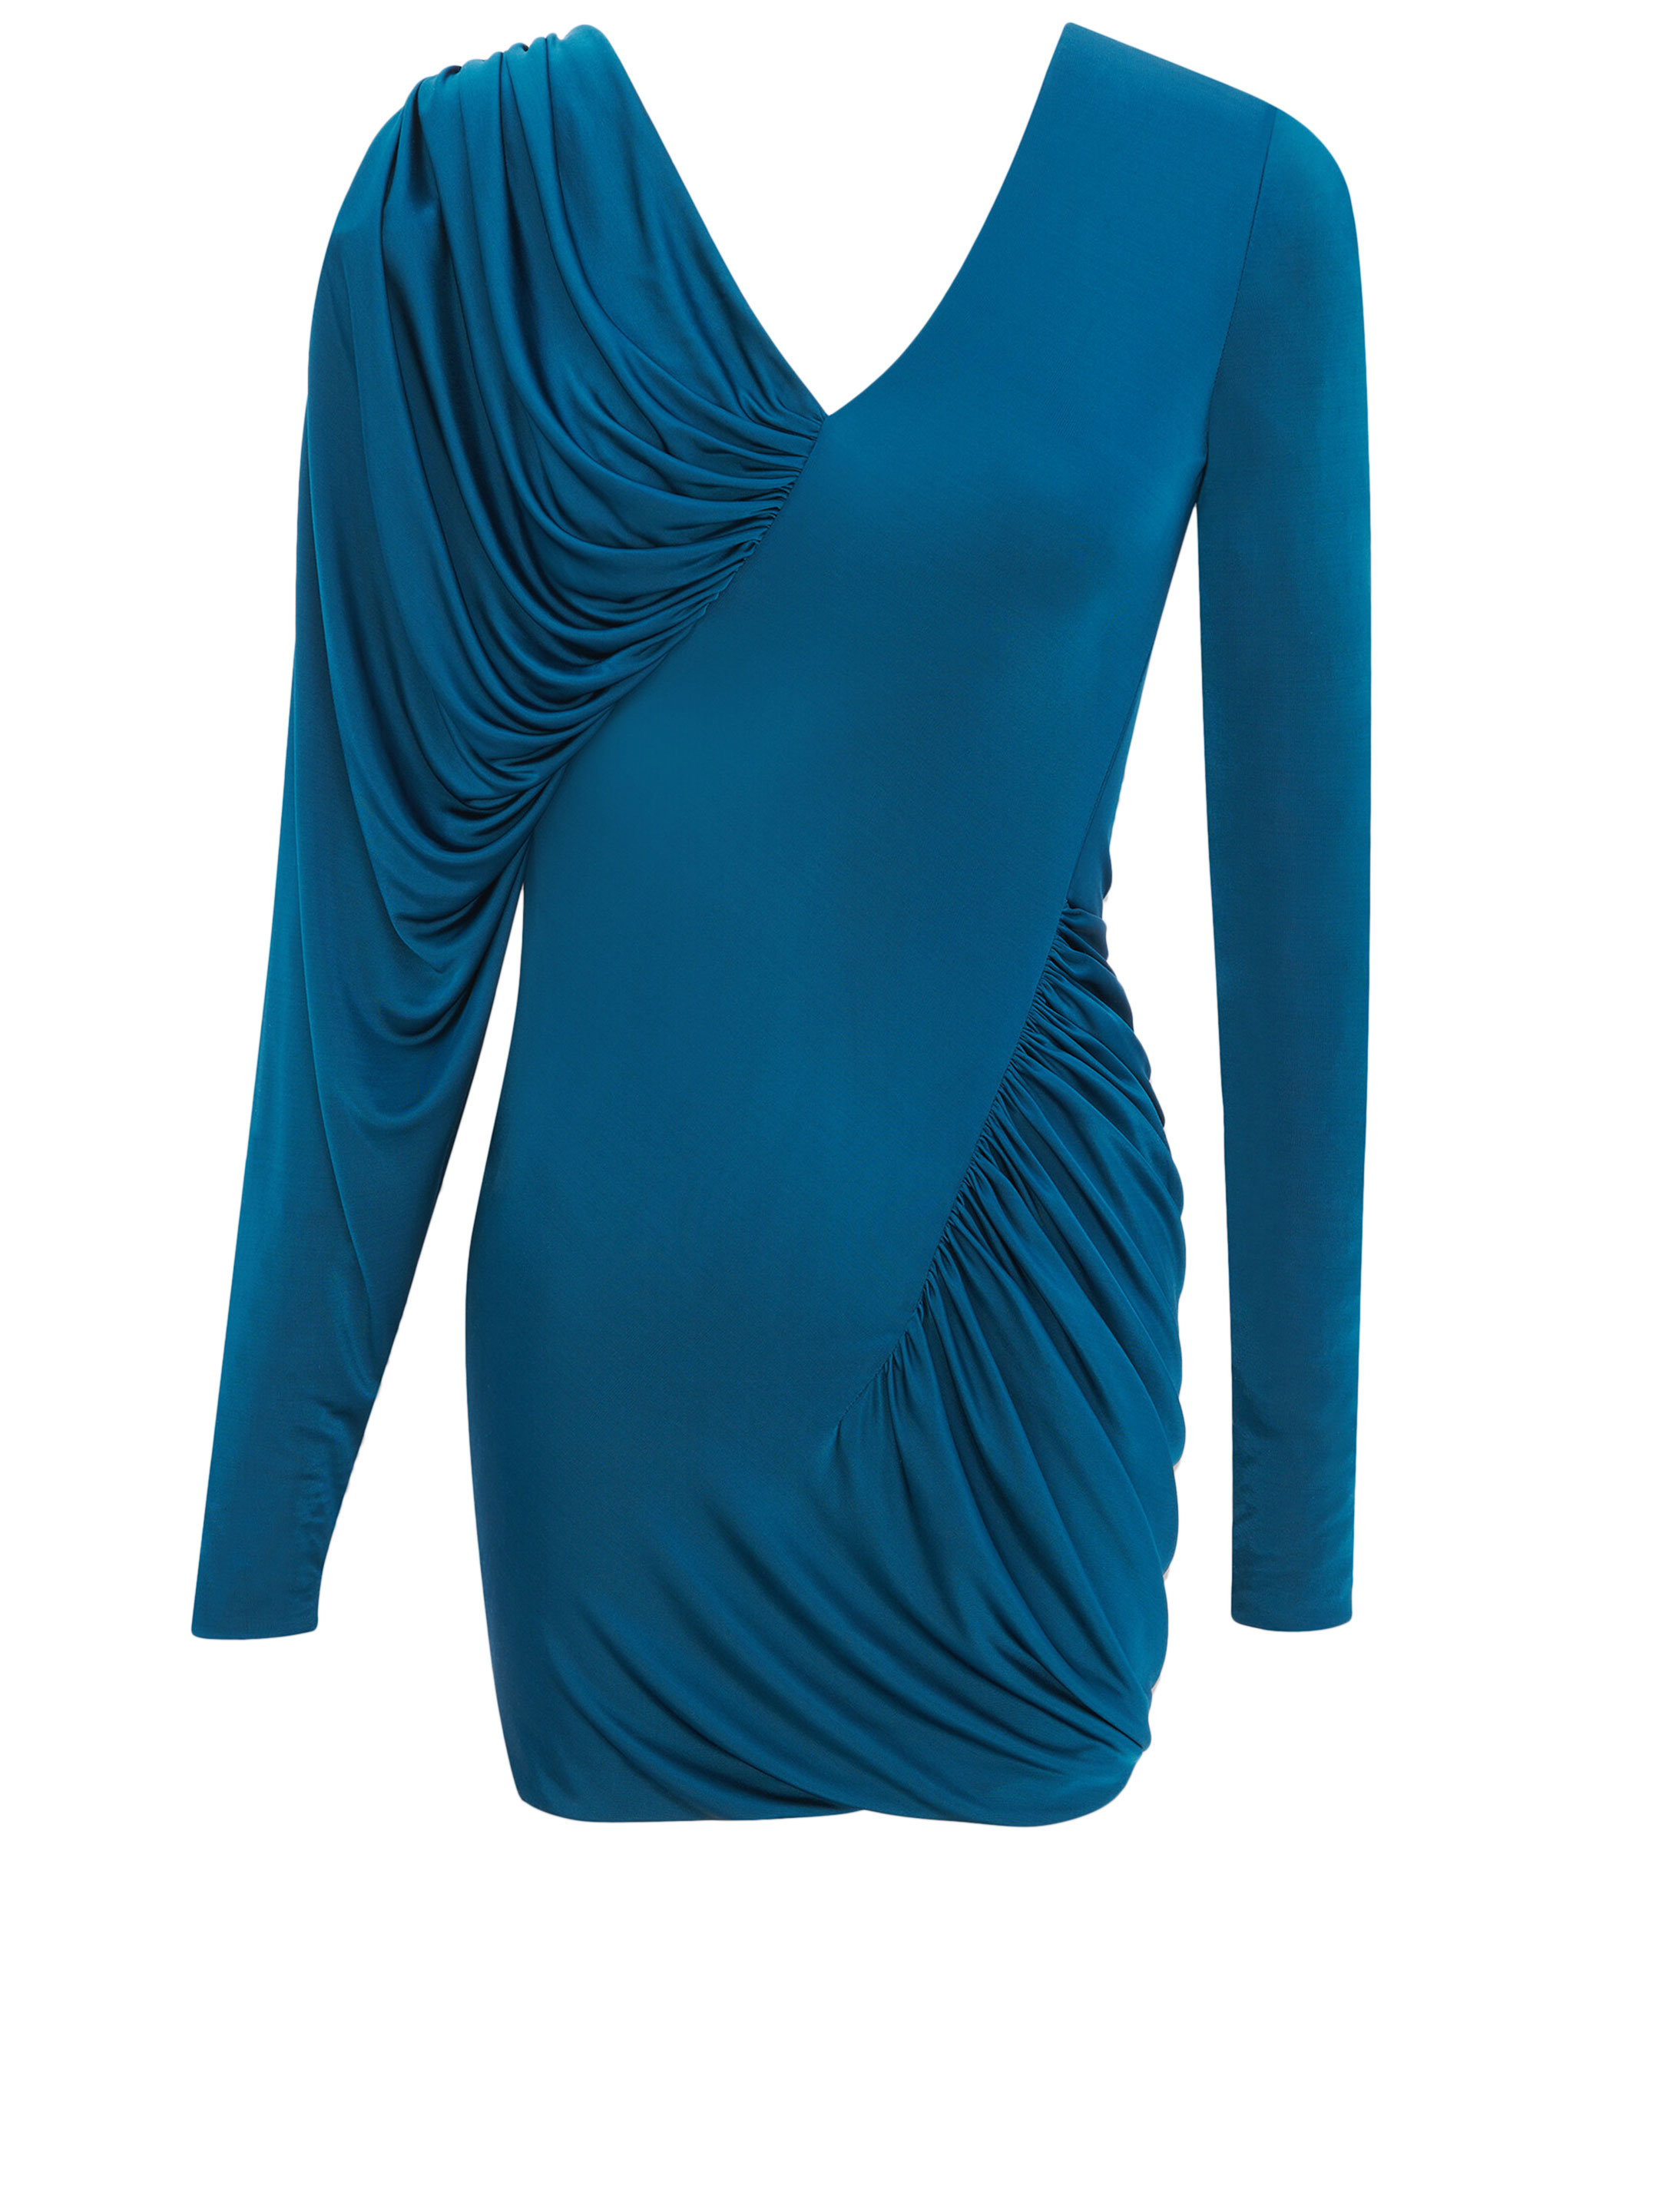 Платье Saint Laurent Draped jersey, синий платье короткое с принтом v образный вырез s зеленый